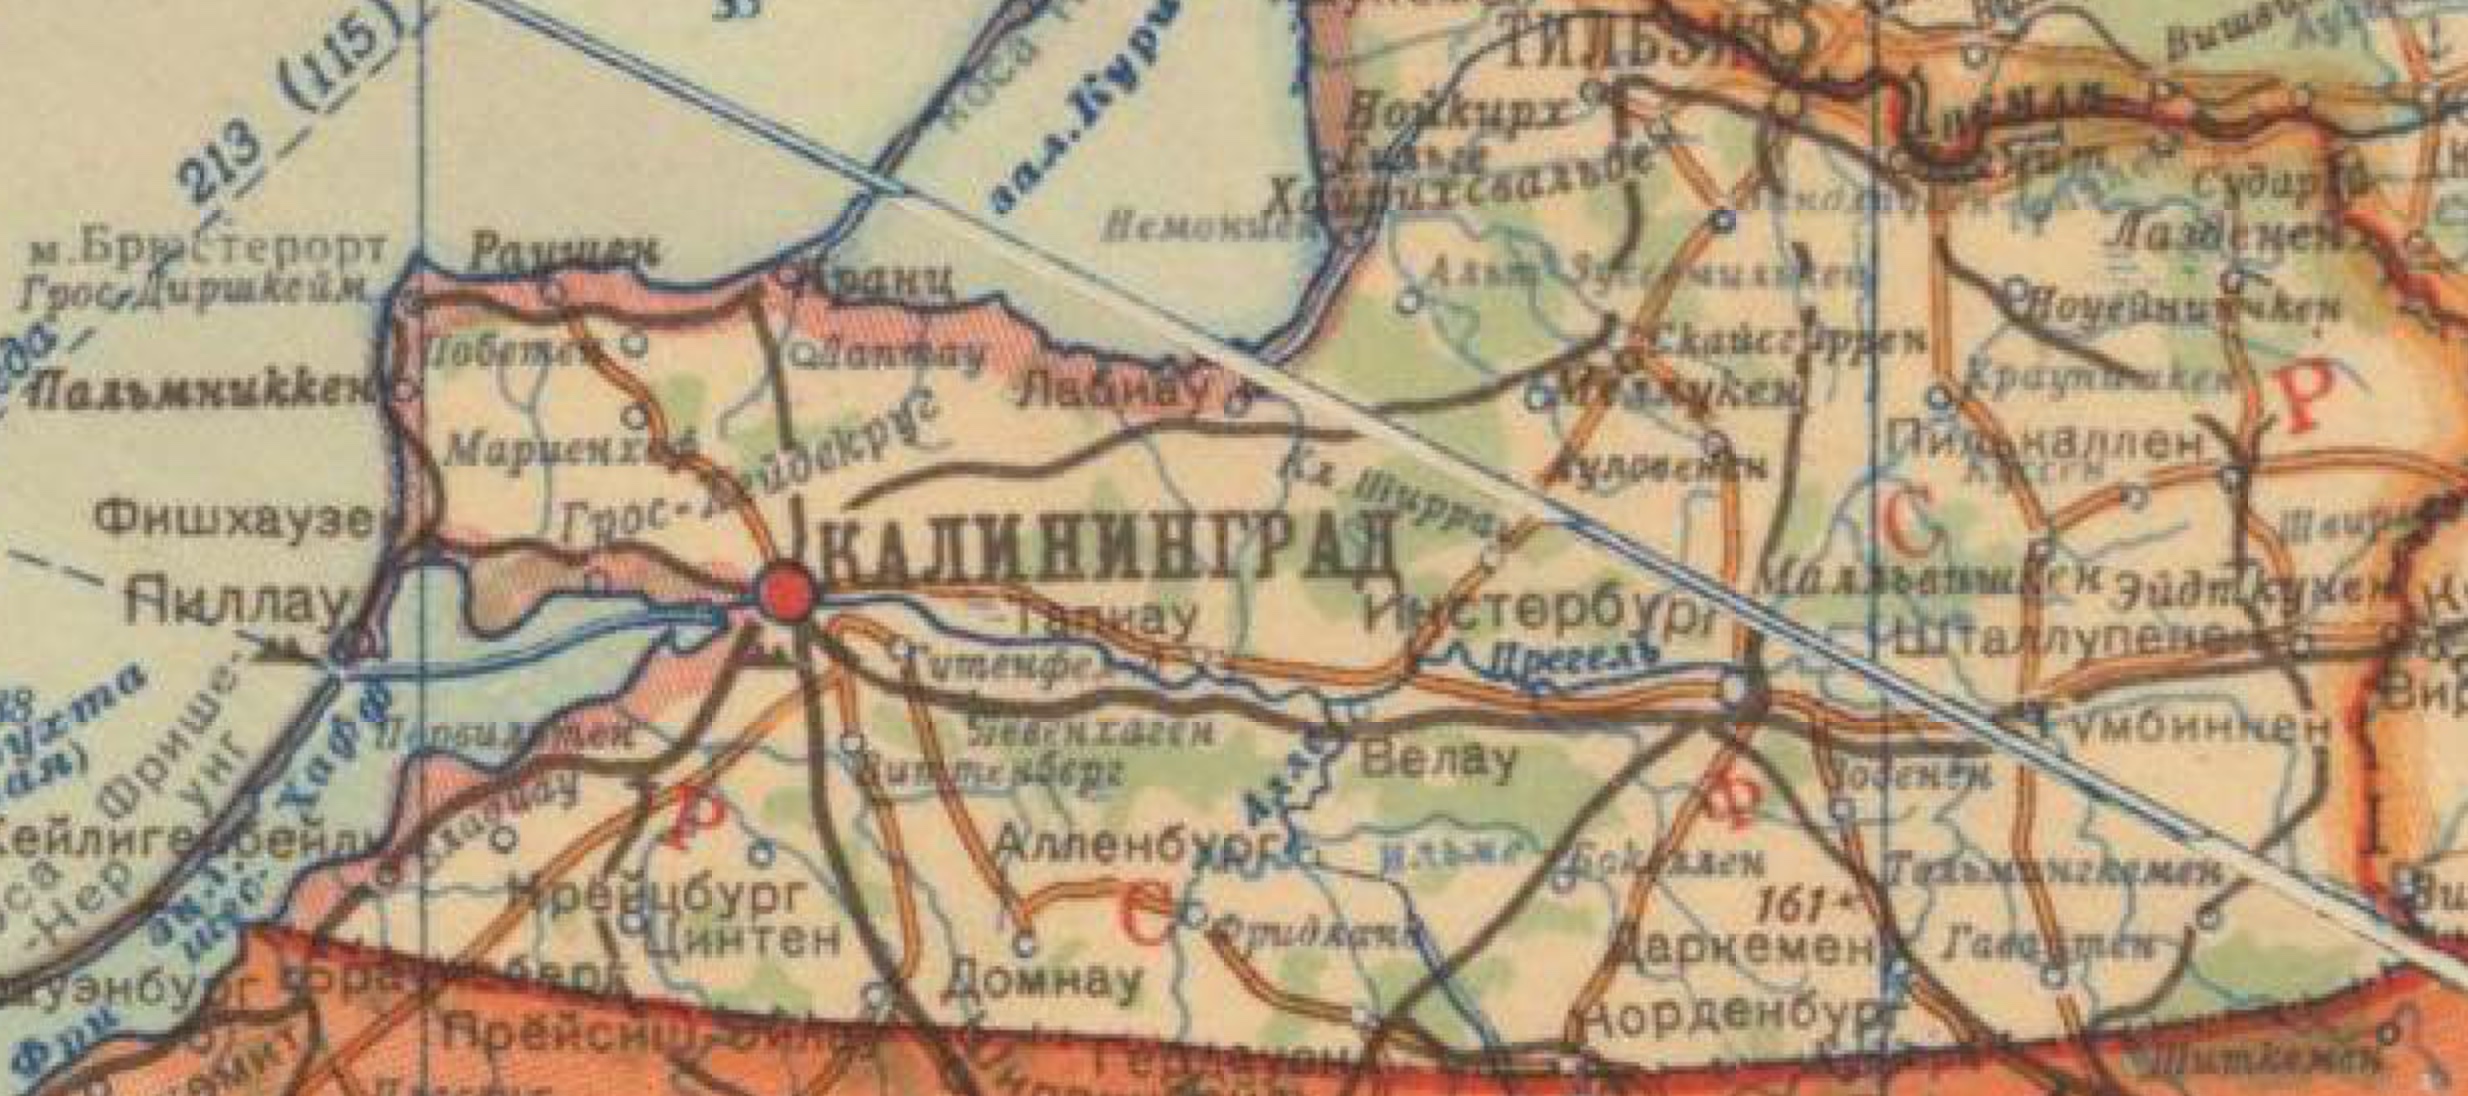 Подпишите на карте город кенигсберг. Карта Кенигсберга 1940 года. Город Велау Пруссия карта. Карта древнего Кенигсберга. Кенигсберг город на карте.